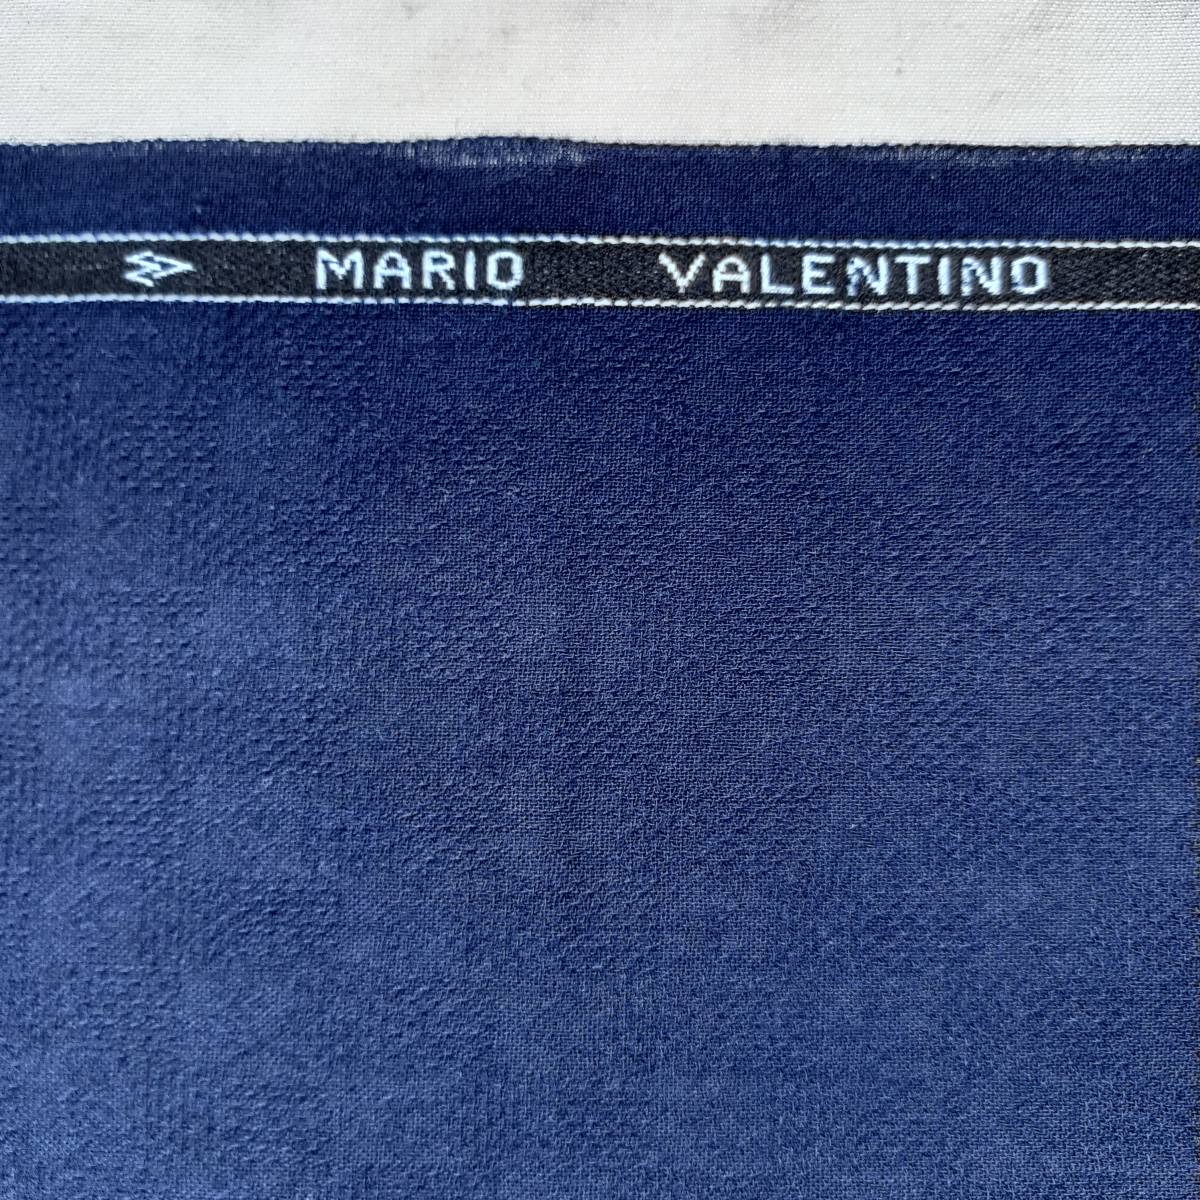 訳あり A192 ビンテージ 夏物 ブレザー生地 紺色系 MARIO VALENTINO マリオ.バレンティーノ 英国製 約1.90 M 重さ 約580 G